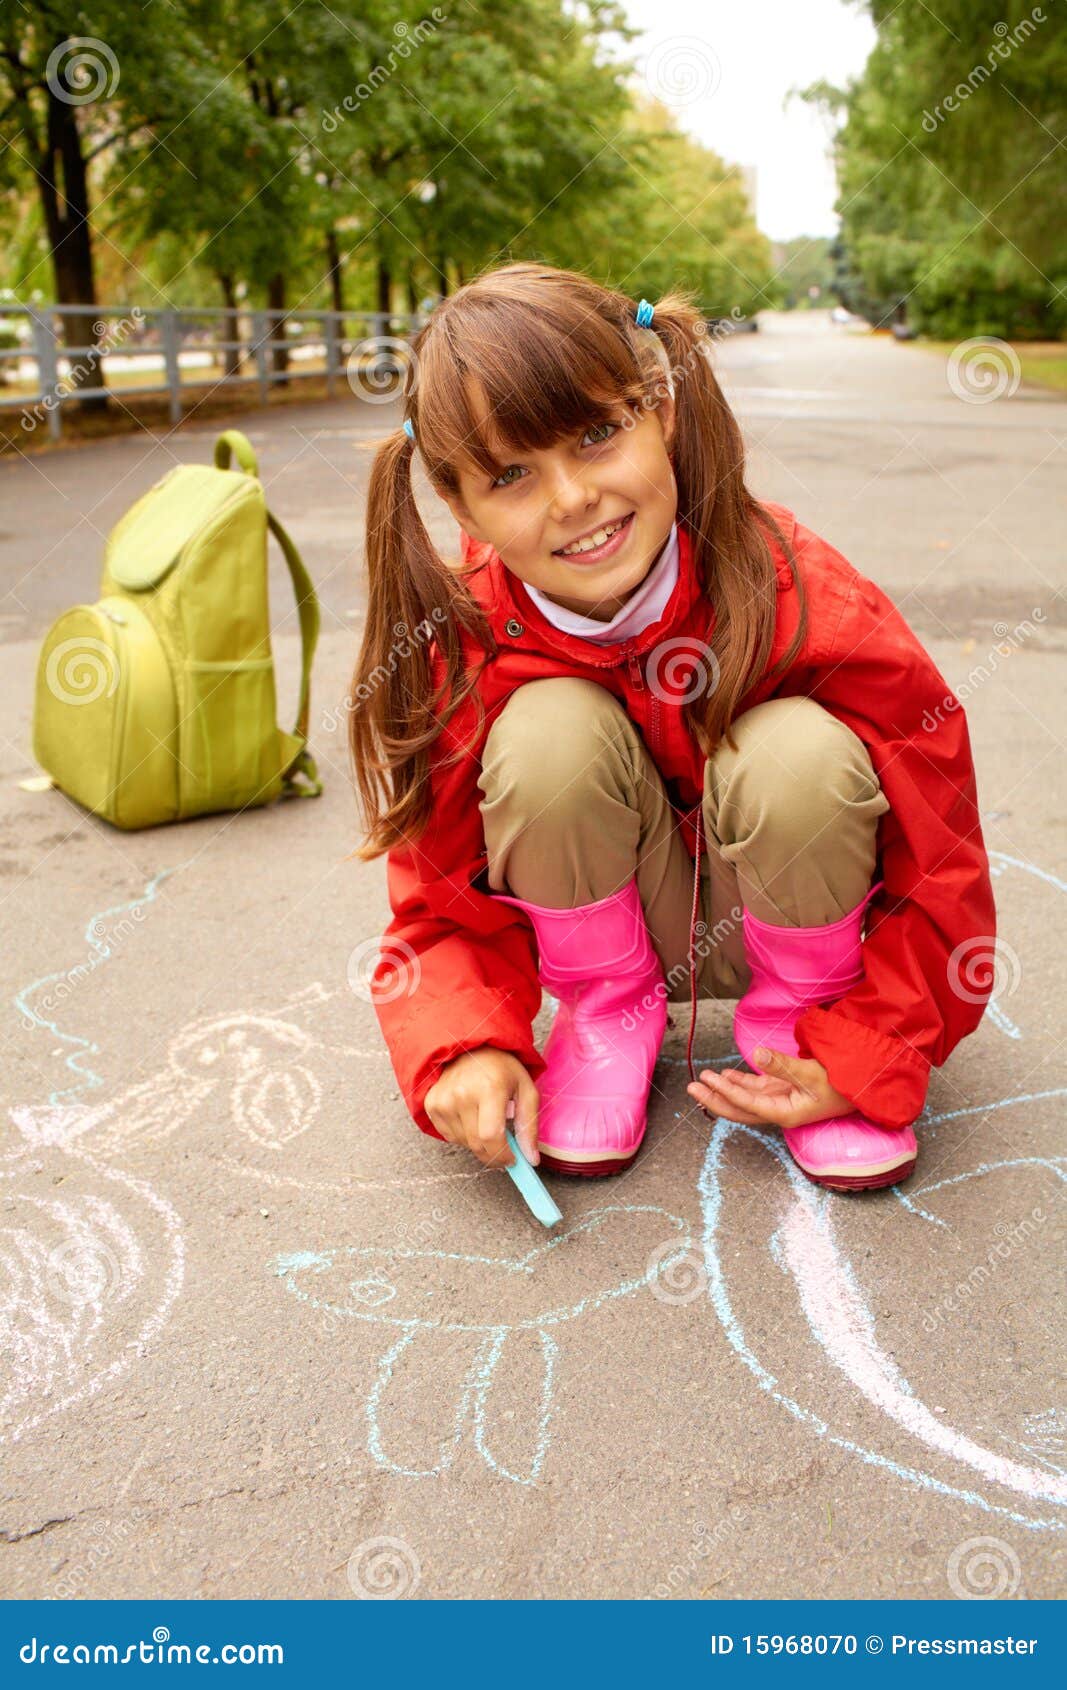 Дочка пописала. Девочка с мелками. Маленькие девочки на детской площадке. Девочка присела. Подростки рисуют на асфальте.